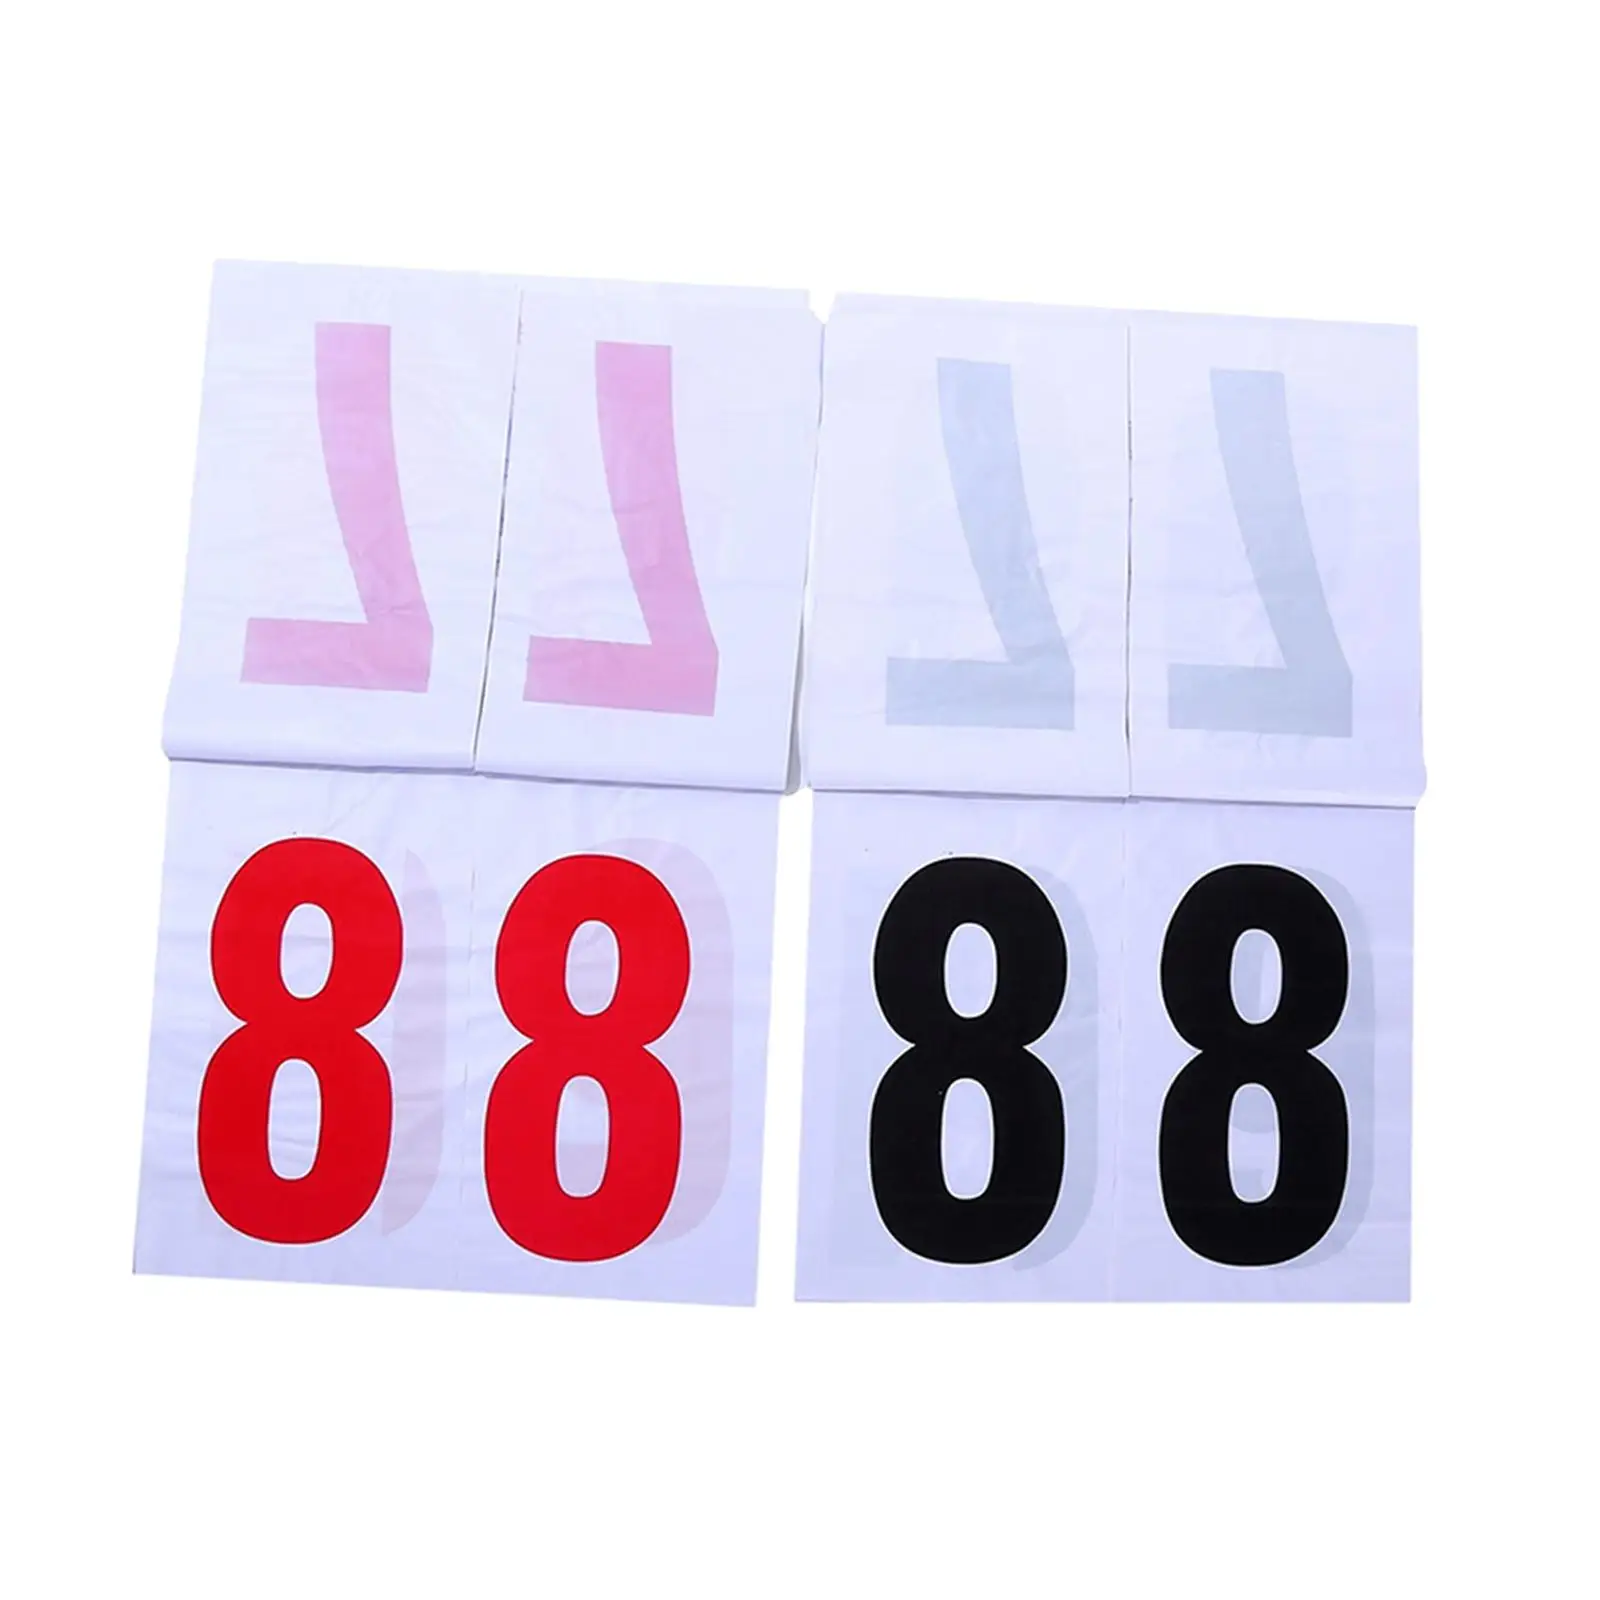 Scoreboard 16.4in*16.4in Hanging 2 digits for Soccer Indoor Outdoor Pingpong